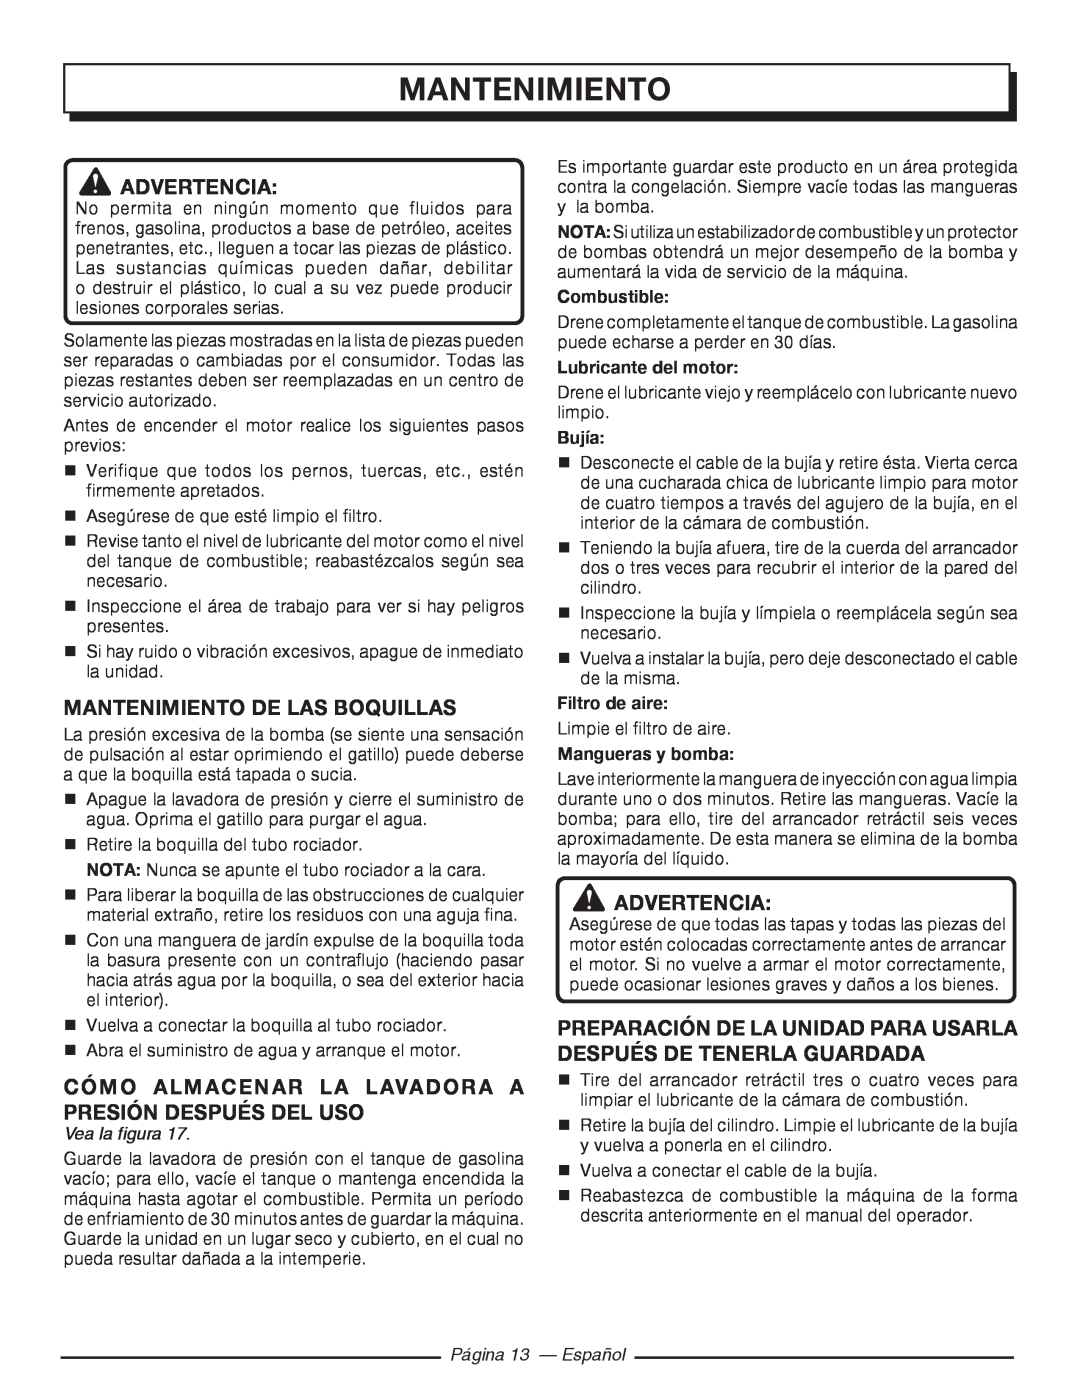 Homelite UT80993 Advertencia, Mantenimiento De Las Boquillas, Cómo Almacenar La Lavadora A Presión Después Del Uso 